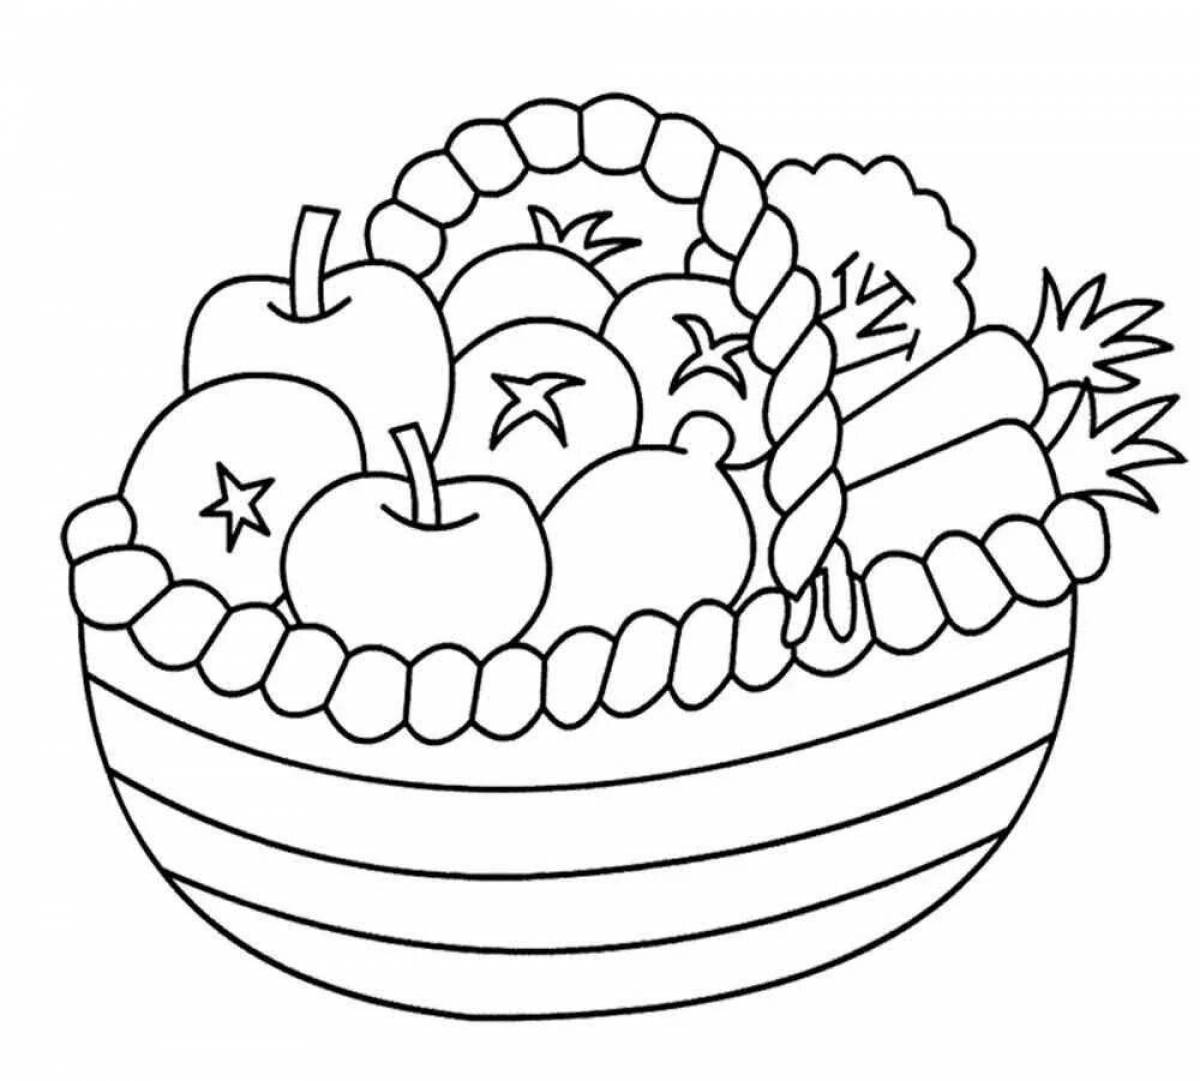 Living fruit basket coloring book for kids